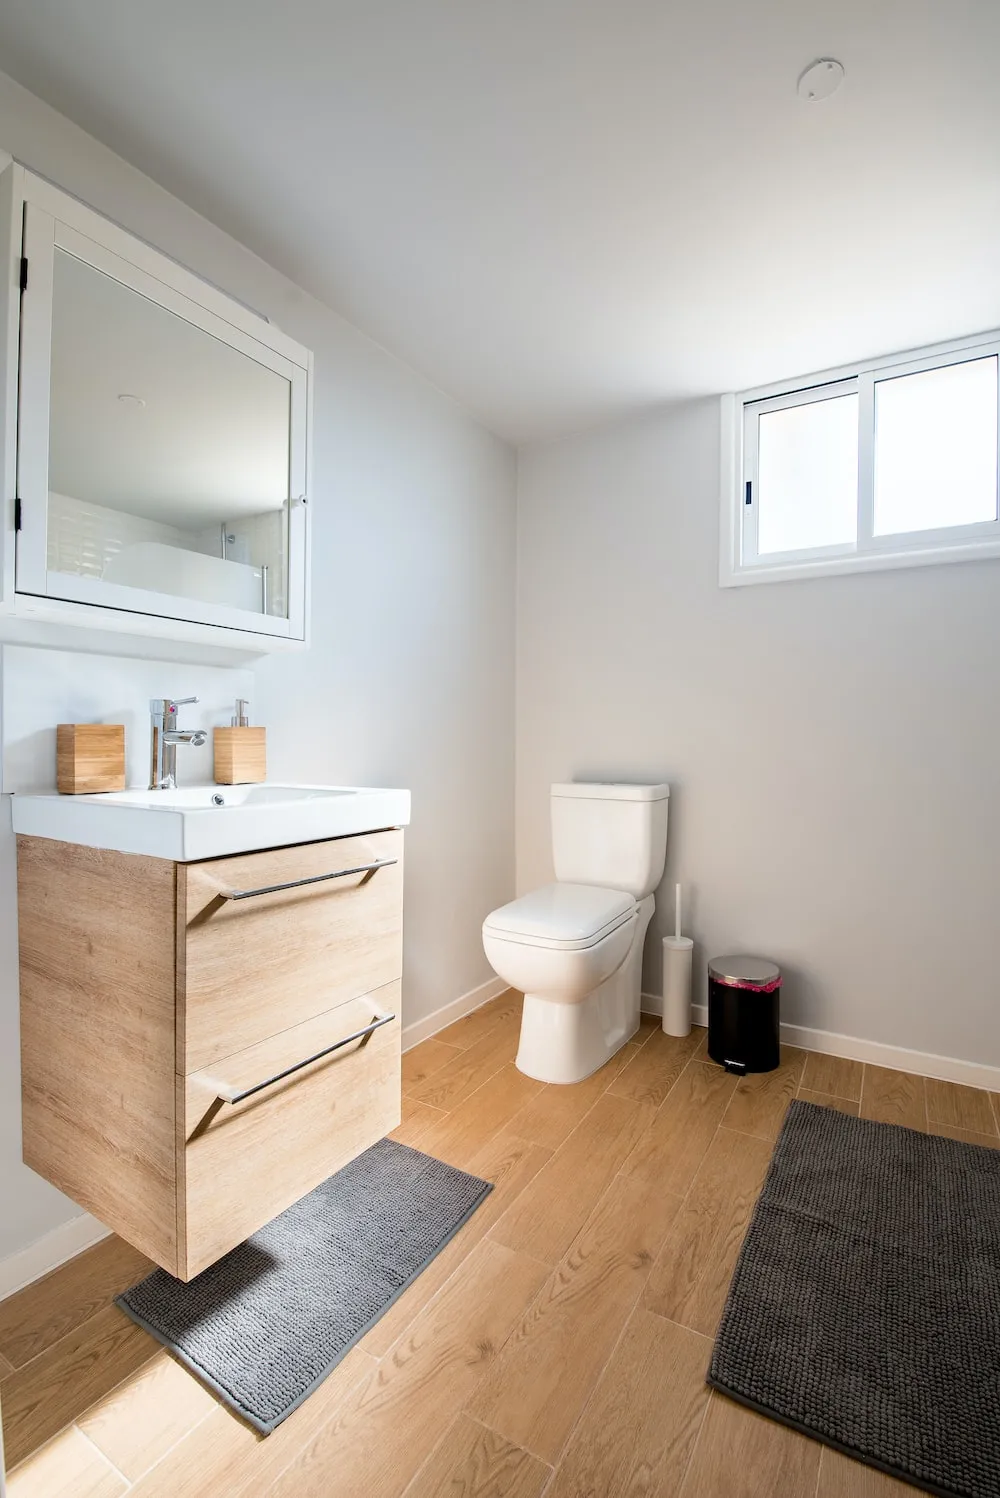 wood patterned floor for bathroom, toilet, wall-mounted vanity, mirror, rugs, lights